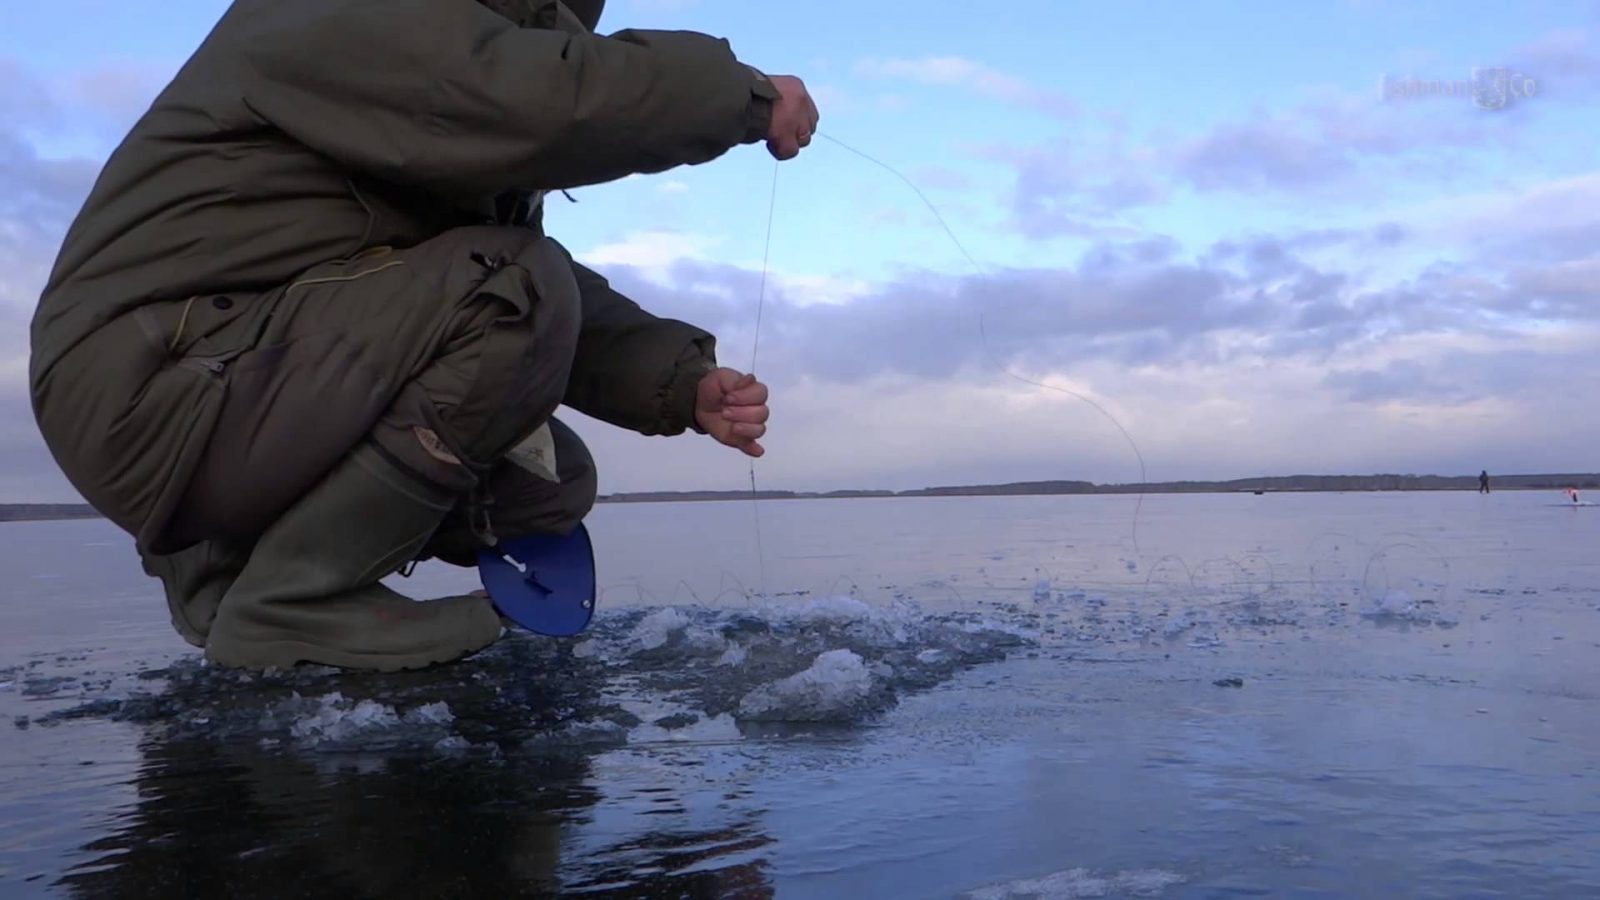 Рыба на льду ловить